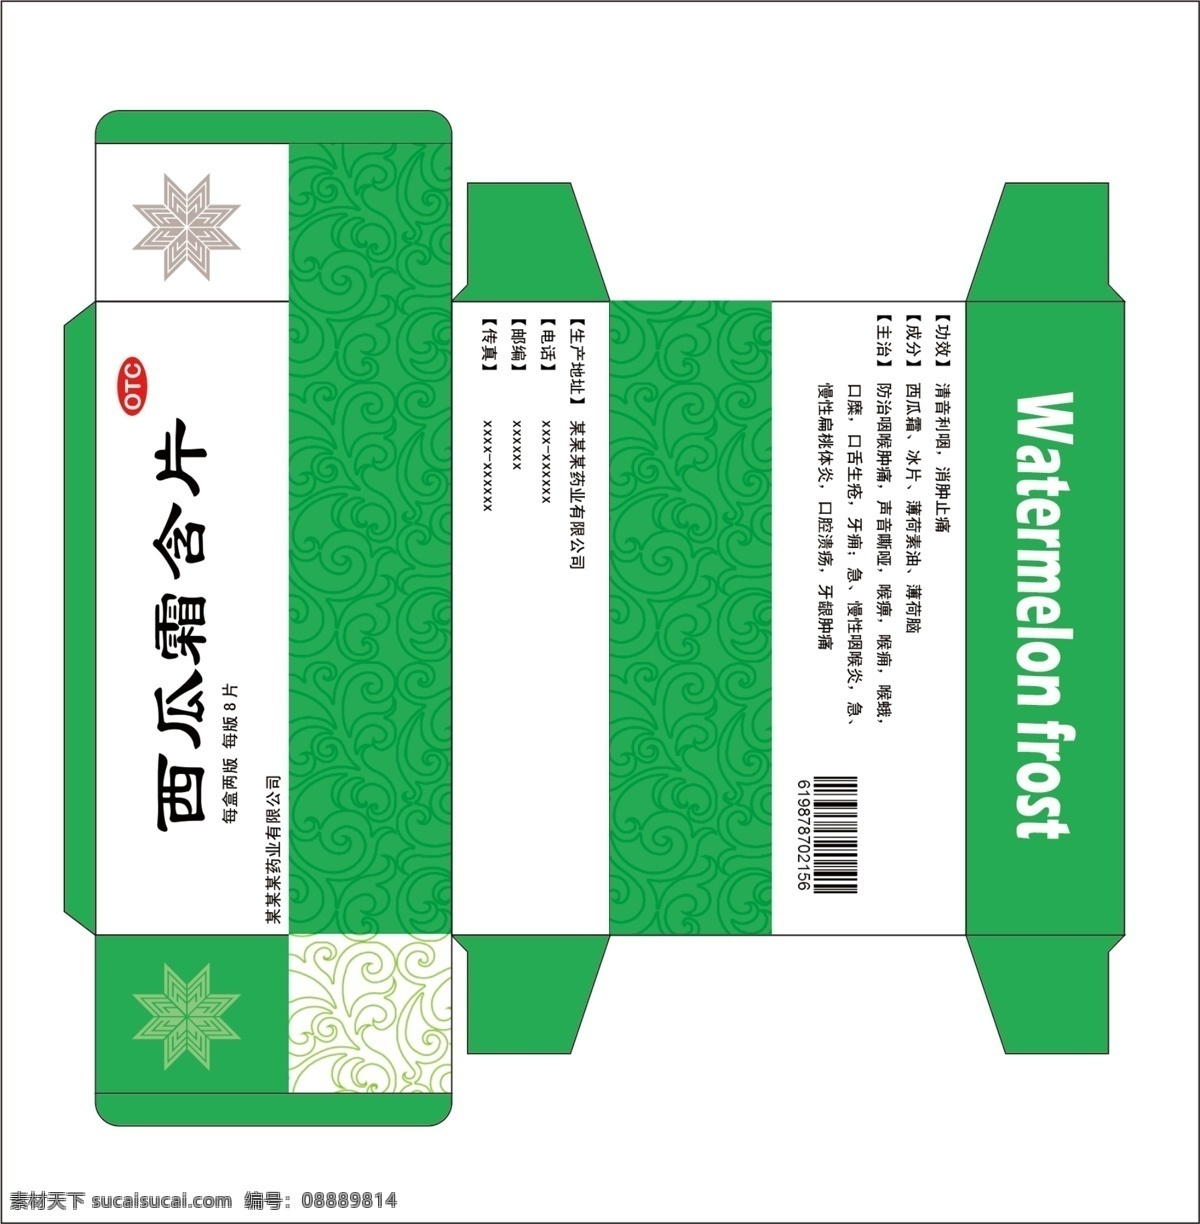 西瓜霜包装盒 西瓜霜 包装盒 绿色 原创 展开图 白色